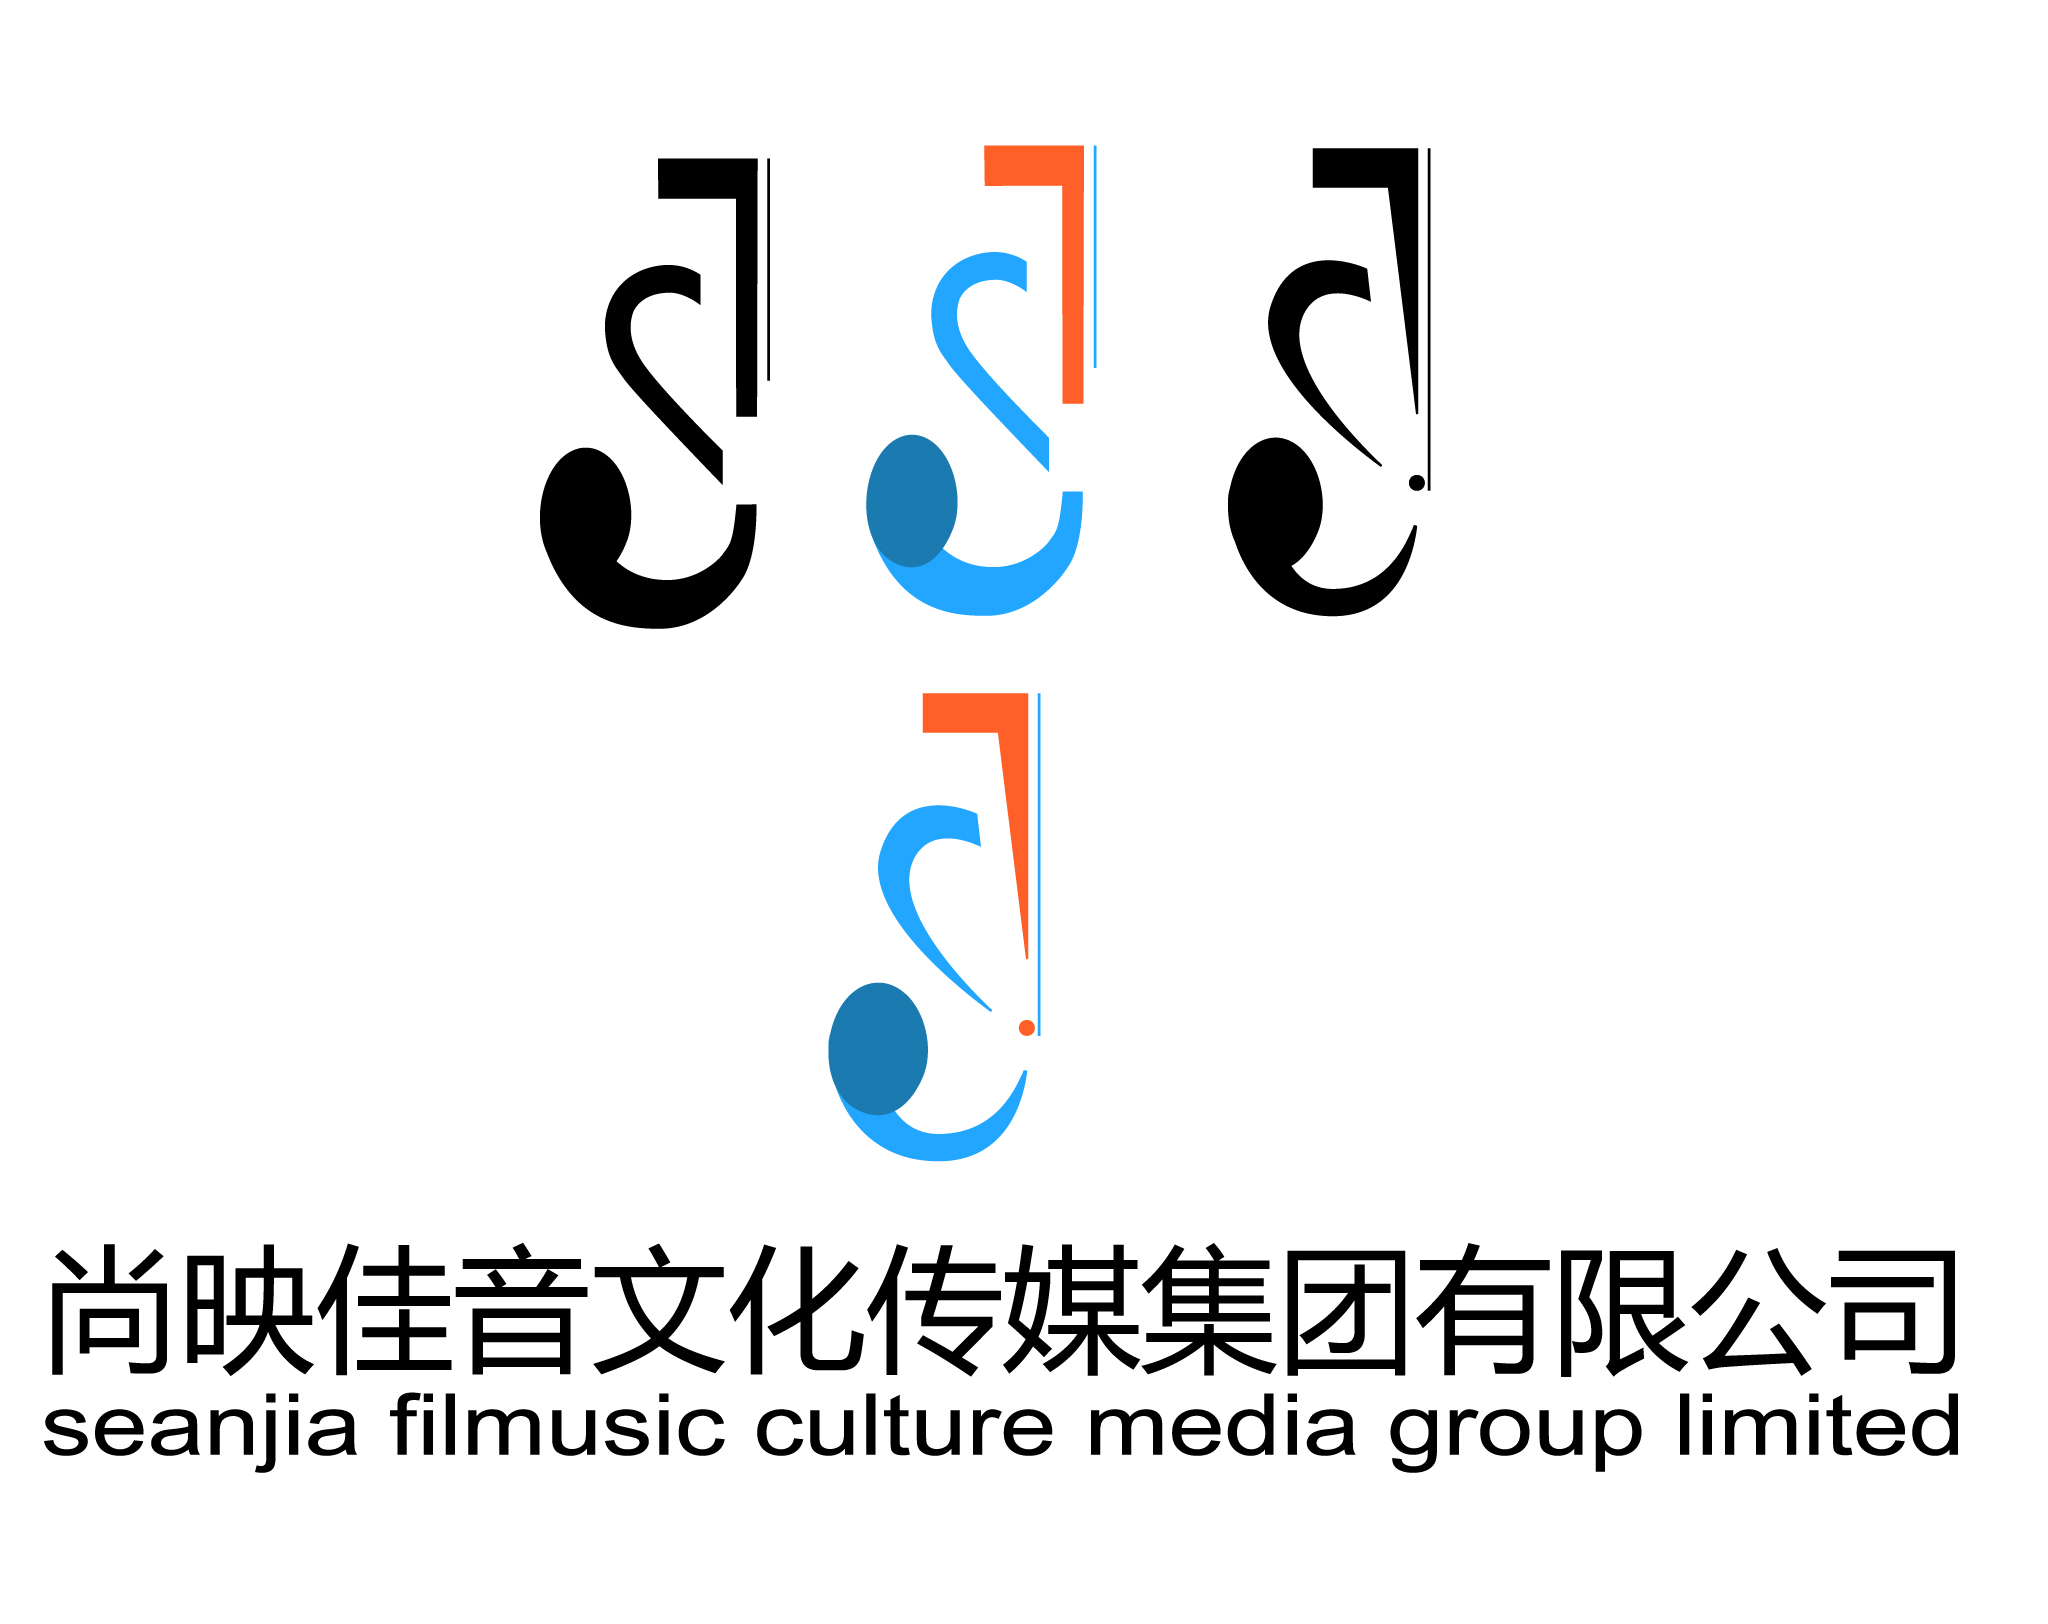 读者传媒：公司经营单位读者杂志社、期刊中心子公司北京天元文化传播有限、读